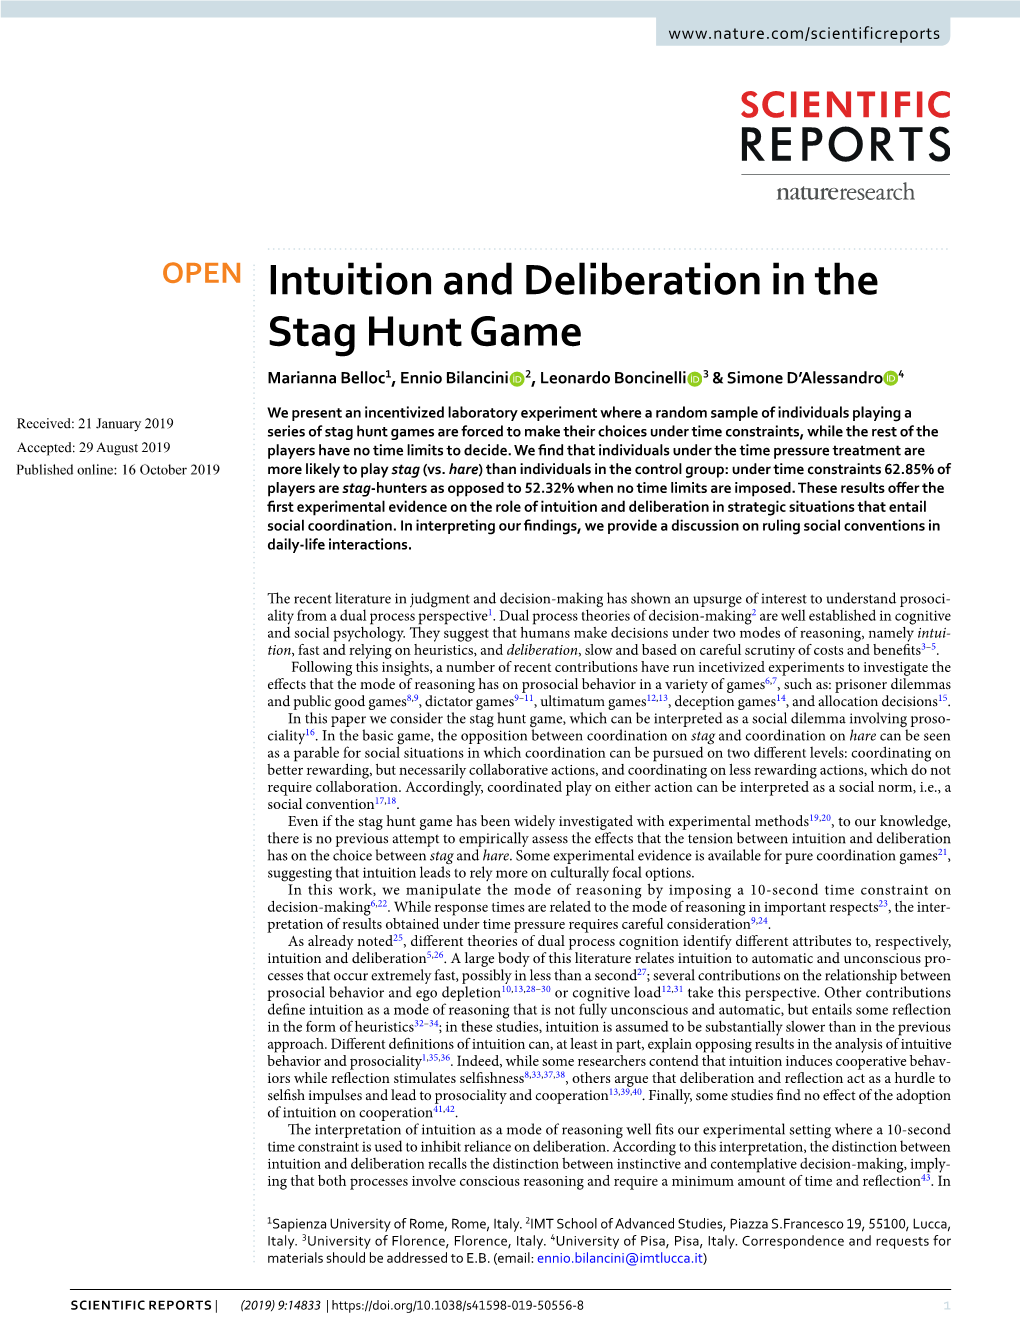 Intuition and Deliberation in the Stag Hunt Game Marianna Belloc1, Ennio Bilancini 2, Leonardo Boncinelli 3 & Simone D’Alessandro 4